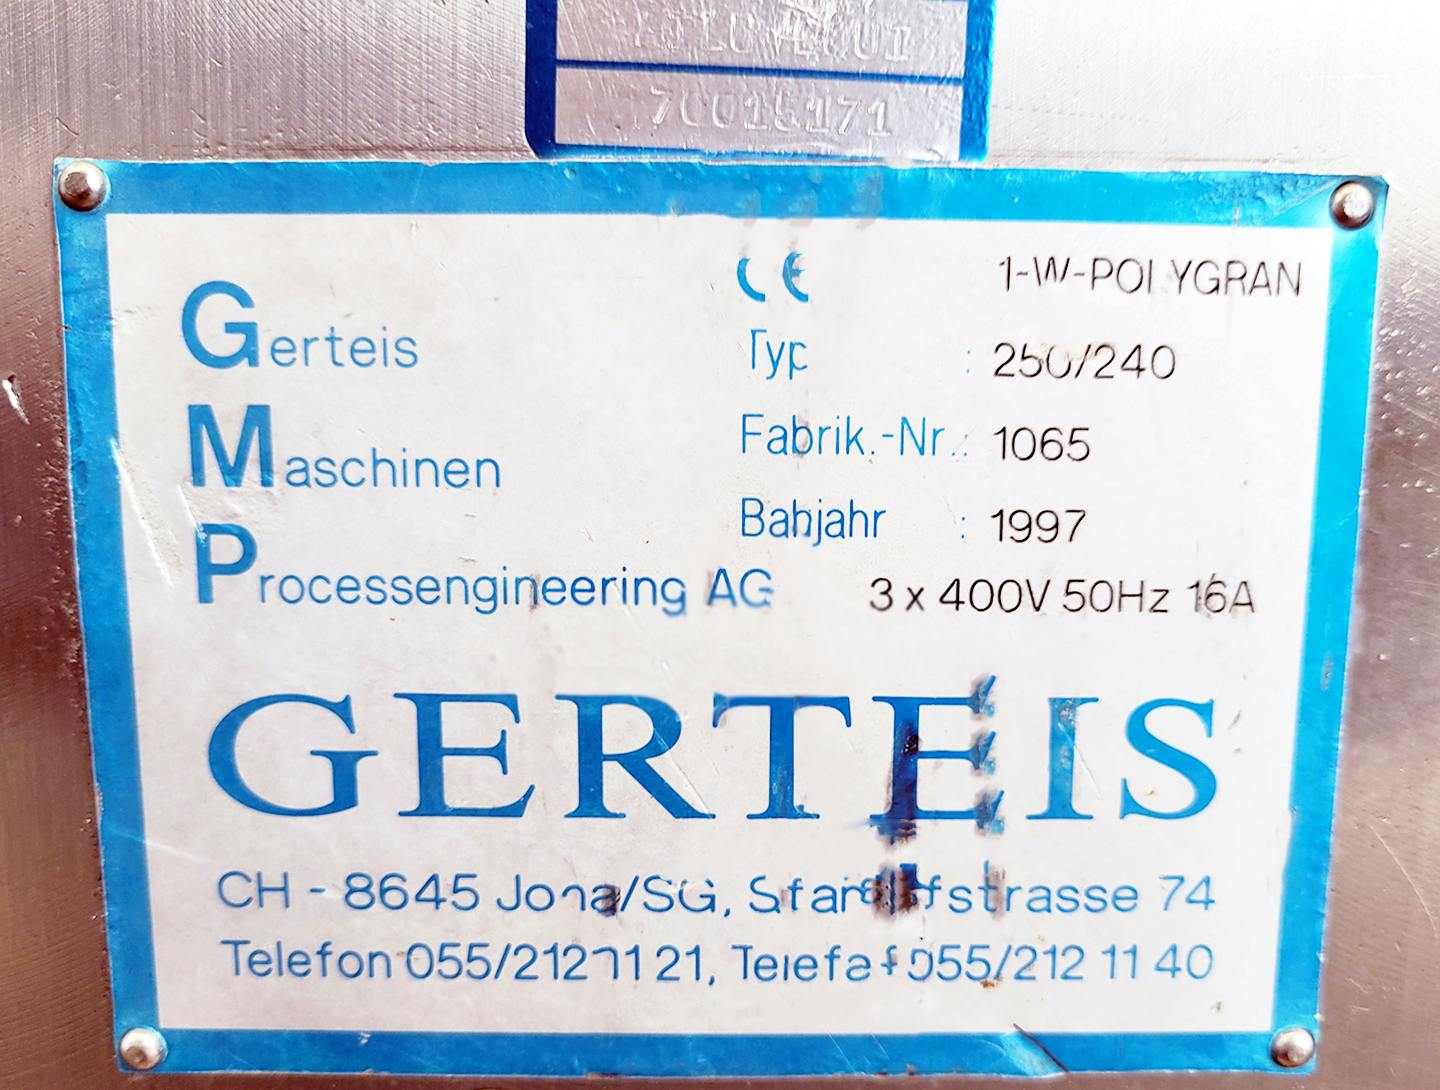 Gerteis 1-W-Polygran 250/240 - Setaccio granulatore - image 18